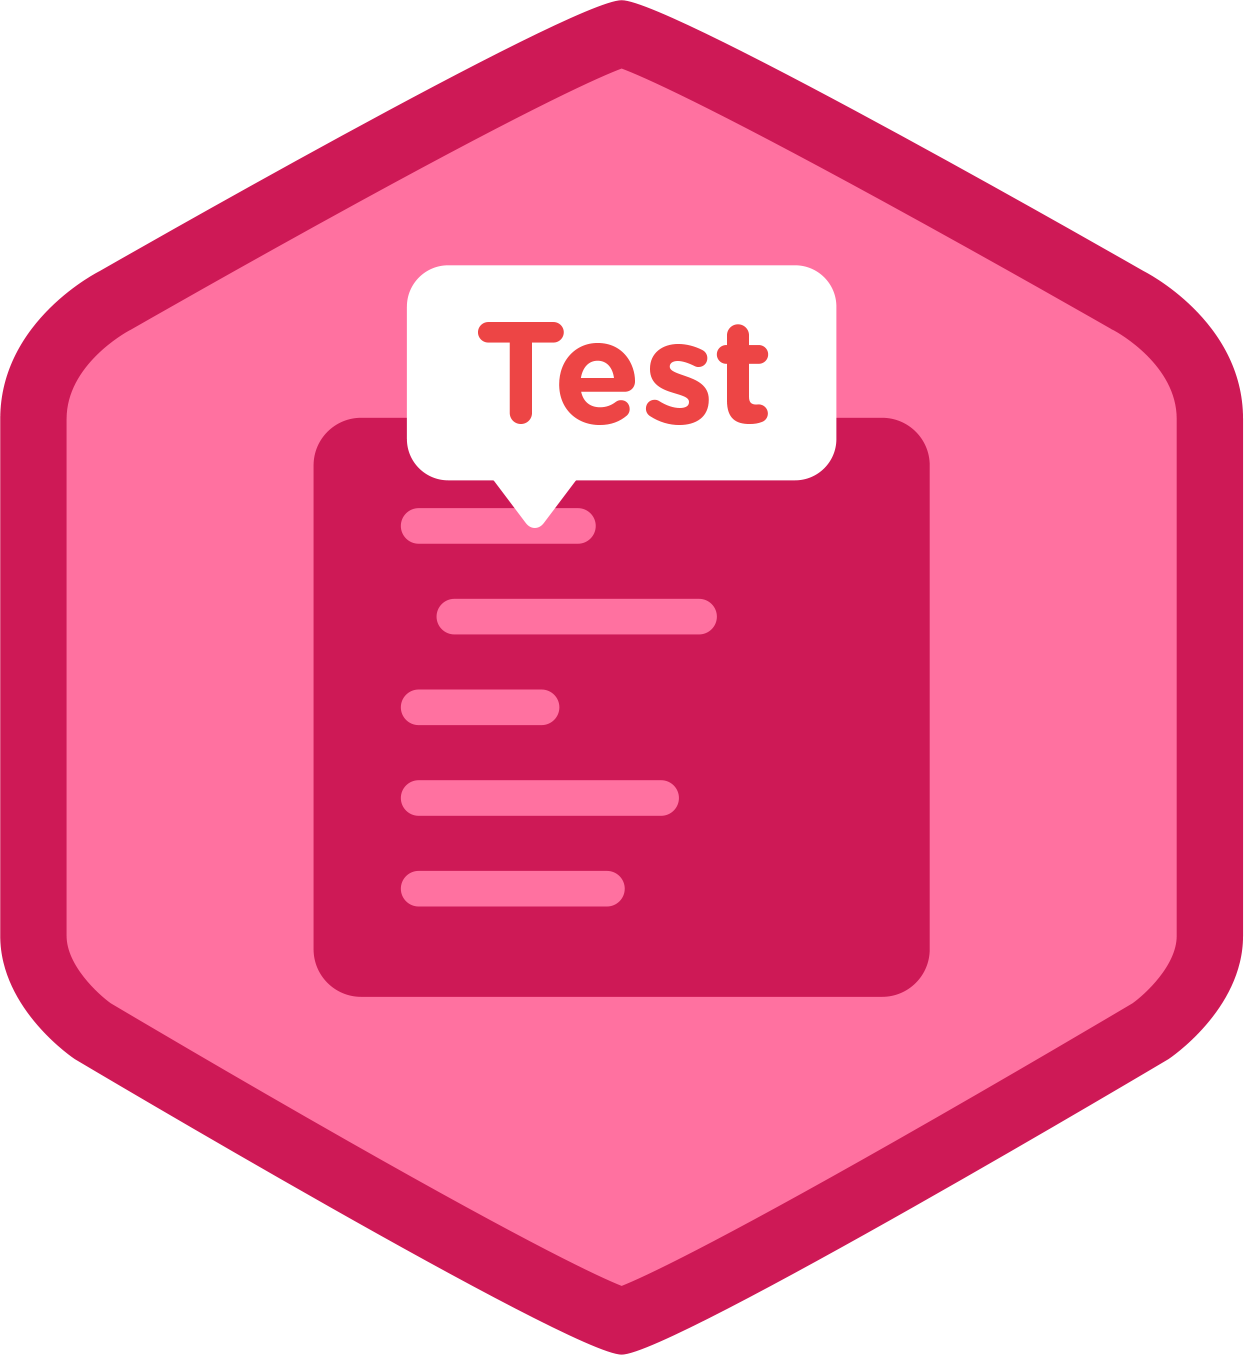 test-clipart-achievement-test-test-achievement-test-transparent-free-for-download-on